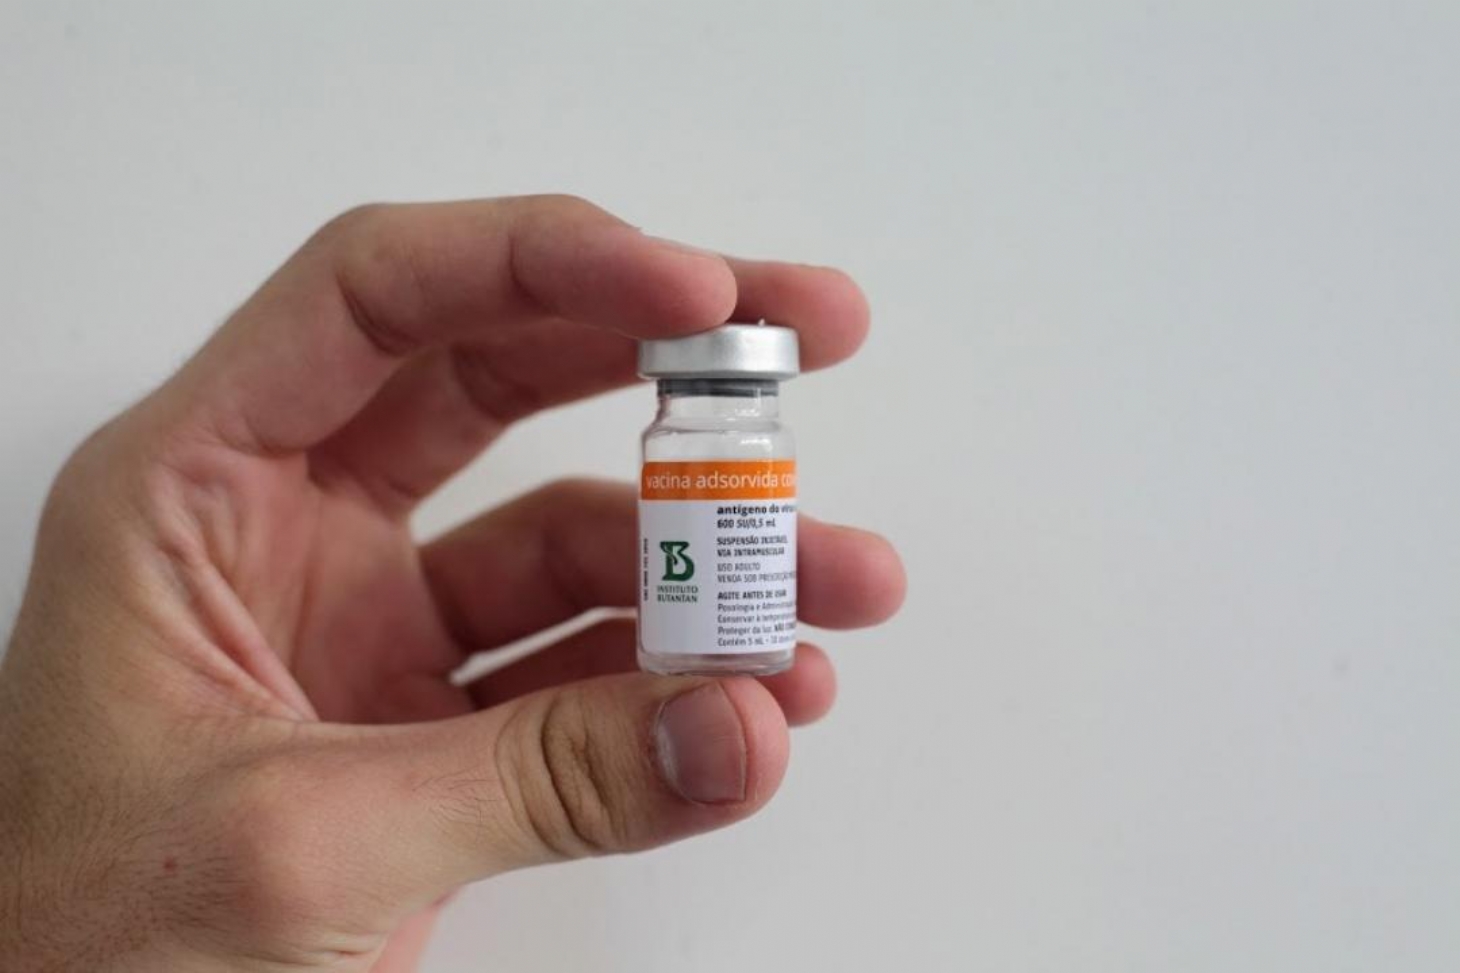 Santos prossegue vacinação com doses de Pfizer e CoronaVac | Jornal da Orla